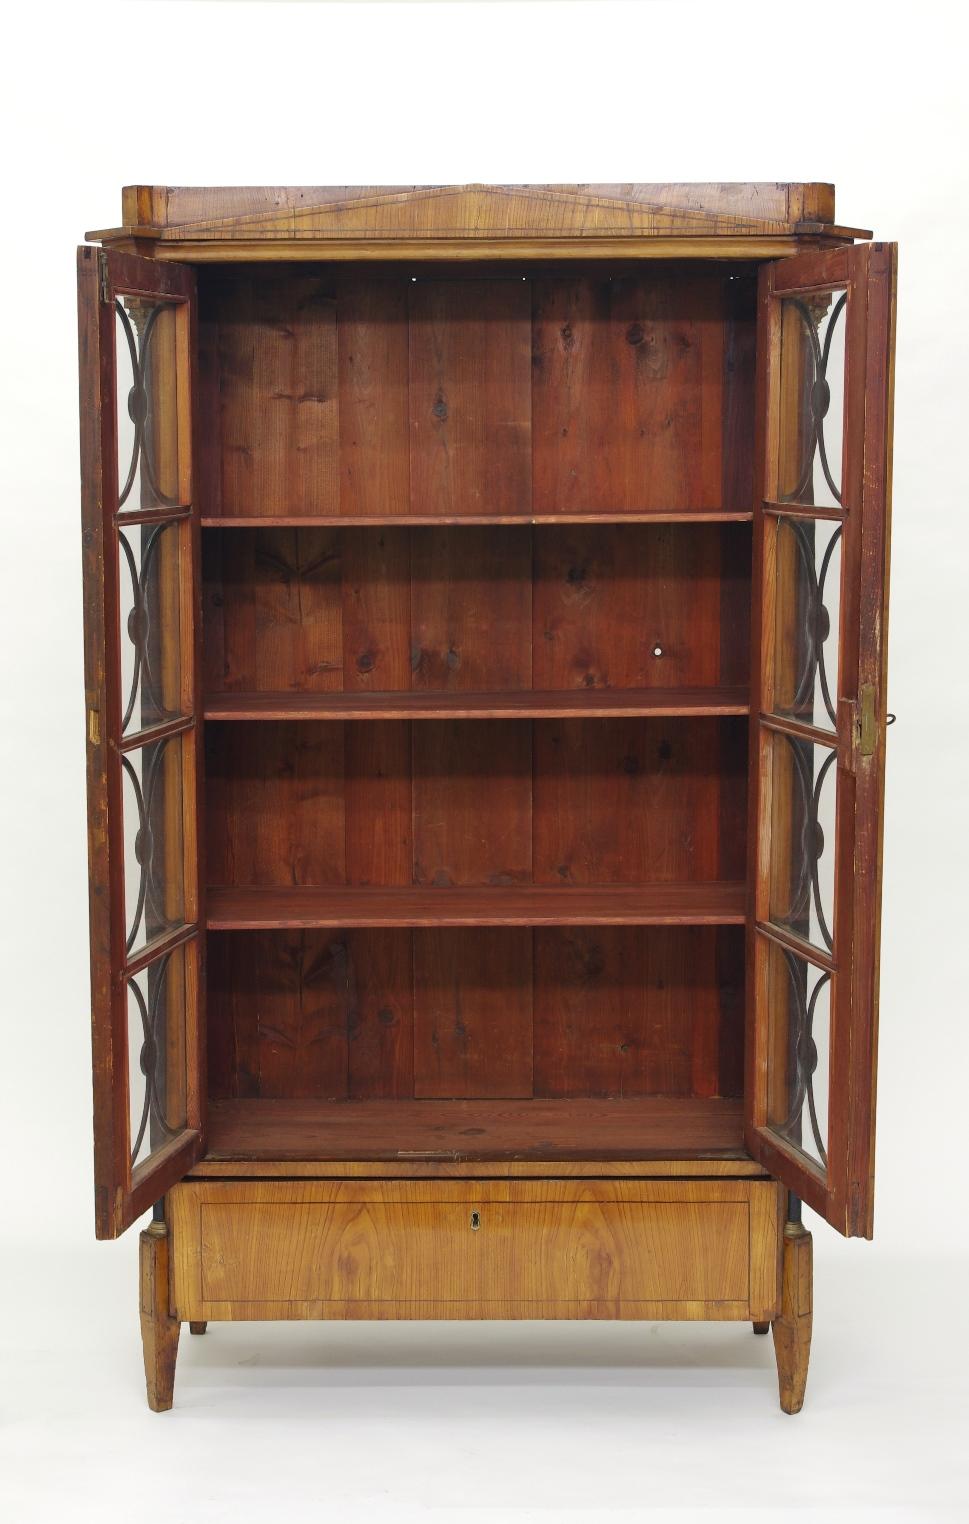 Biedermeier Cherry Bookcase, circa 1820 (Österreichisch)